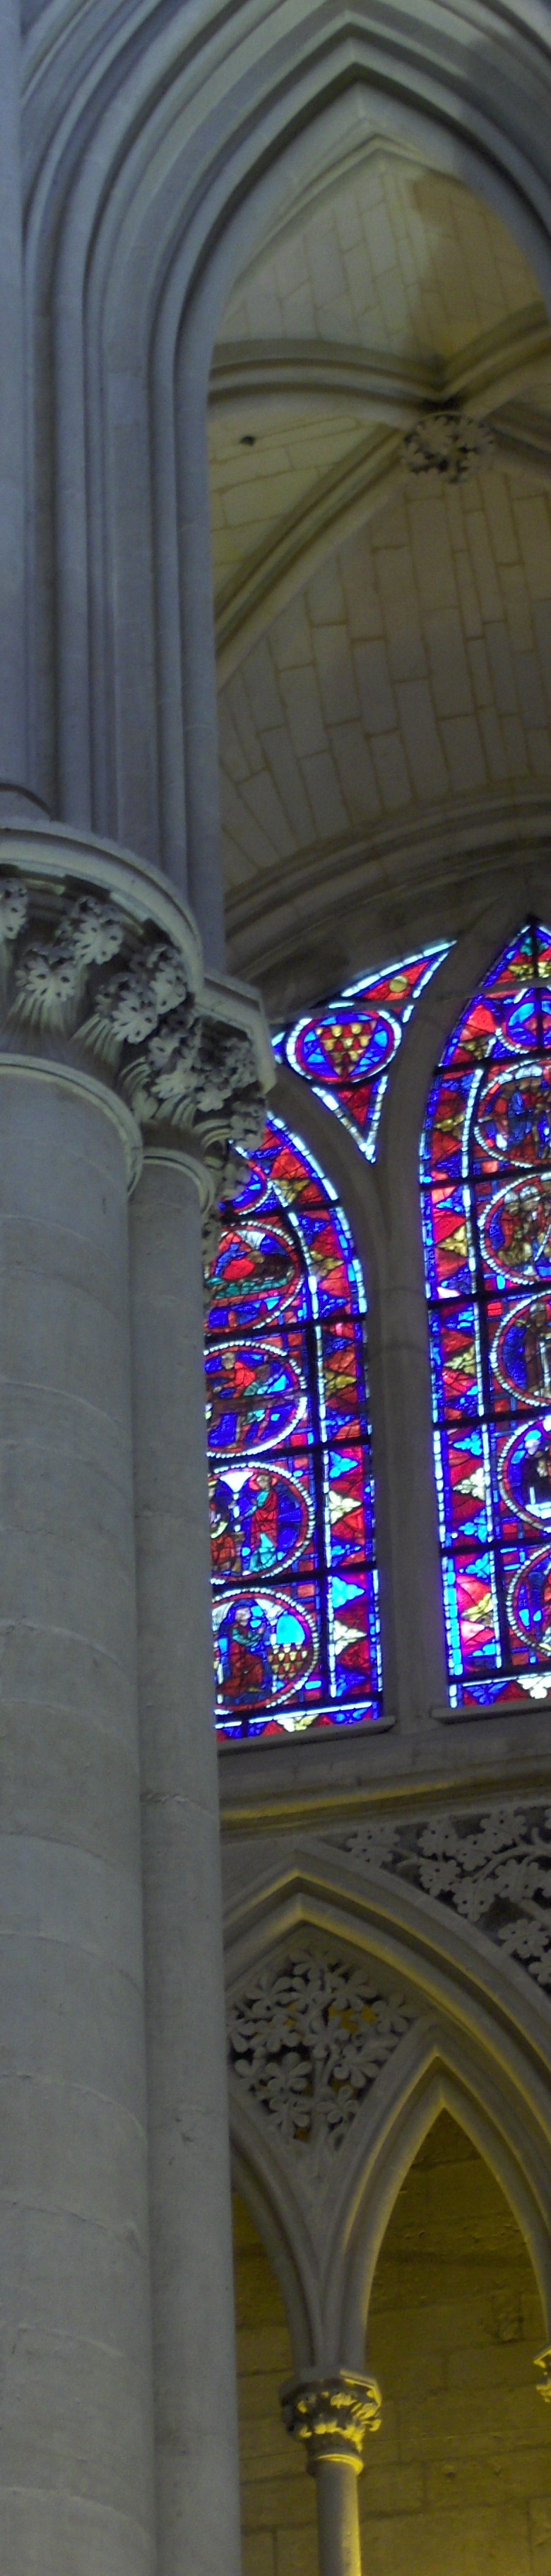 intérieur cathédrale du Mans